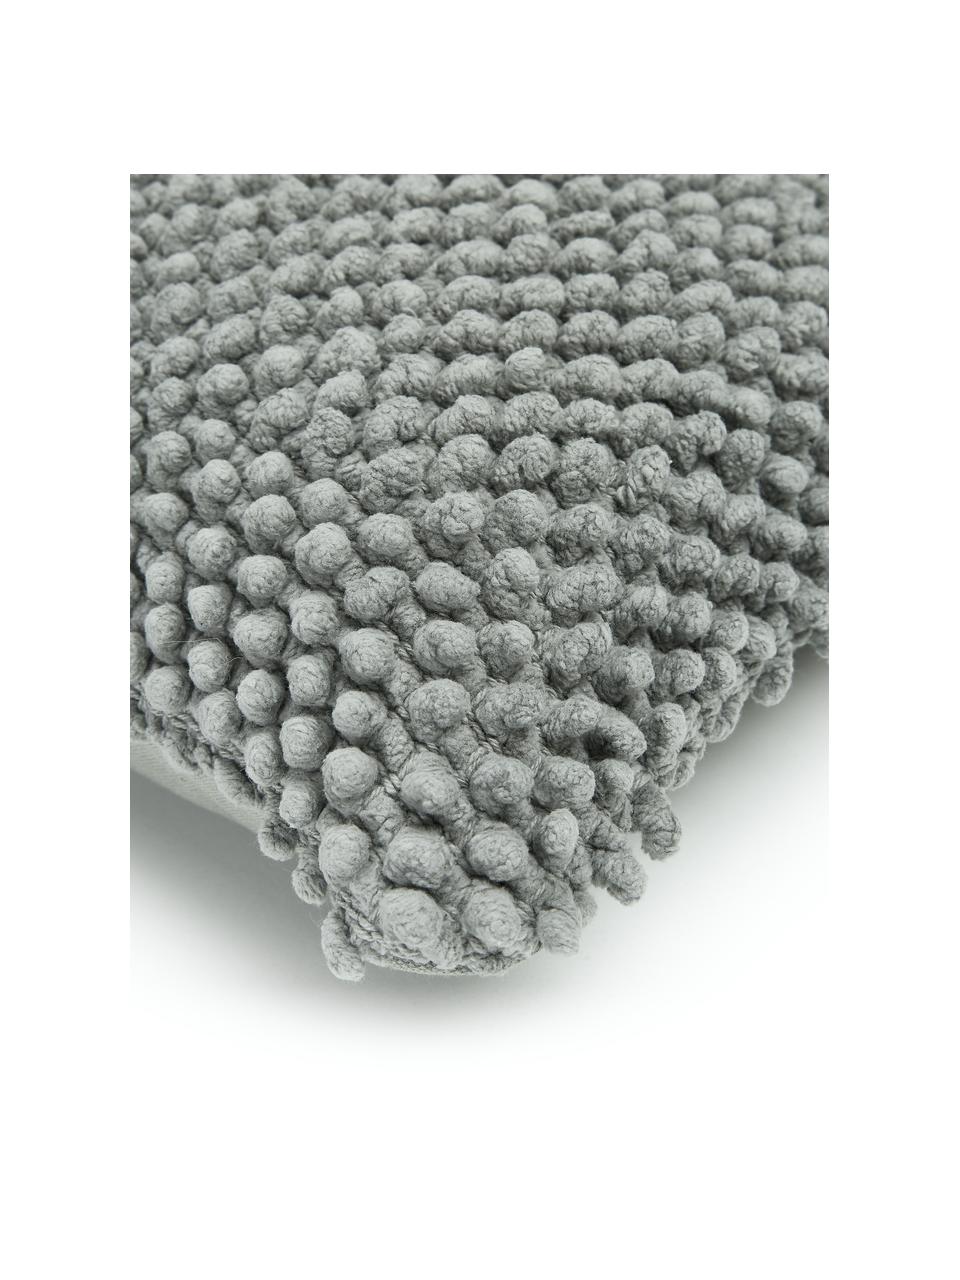 Poszewka na poduszkę ze strukturalną powierzchnią Indi, 100% bawełna, Zielony, S 30 x D 50 cm